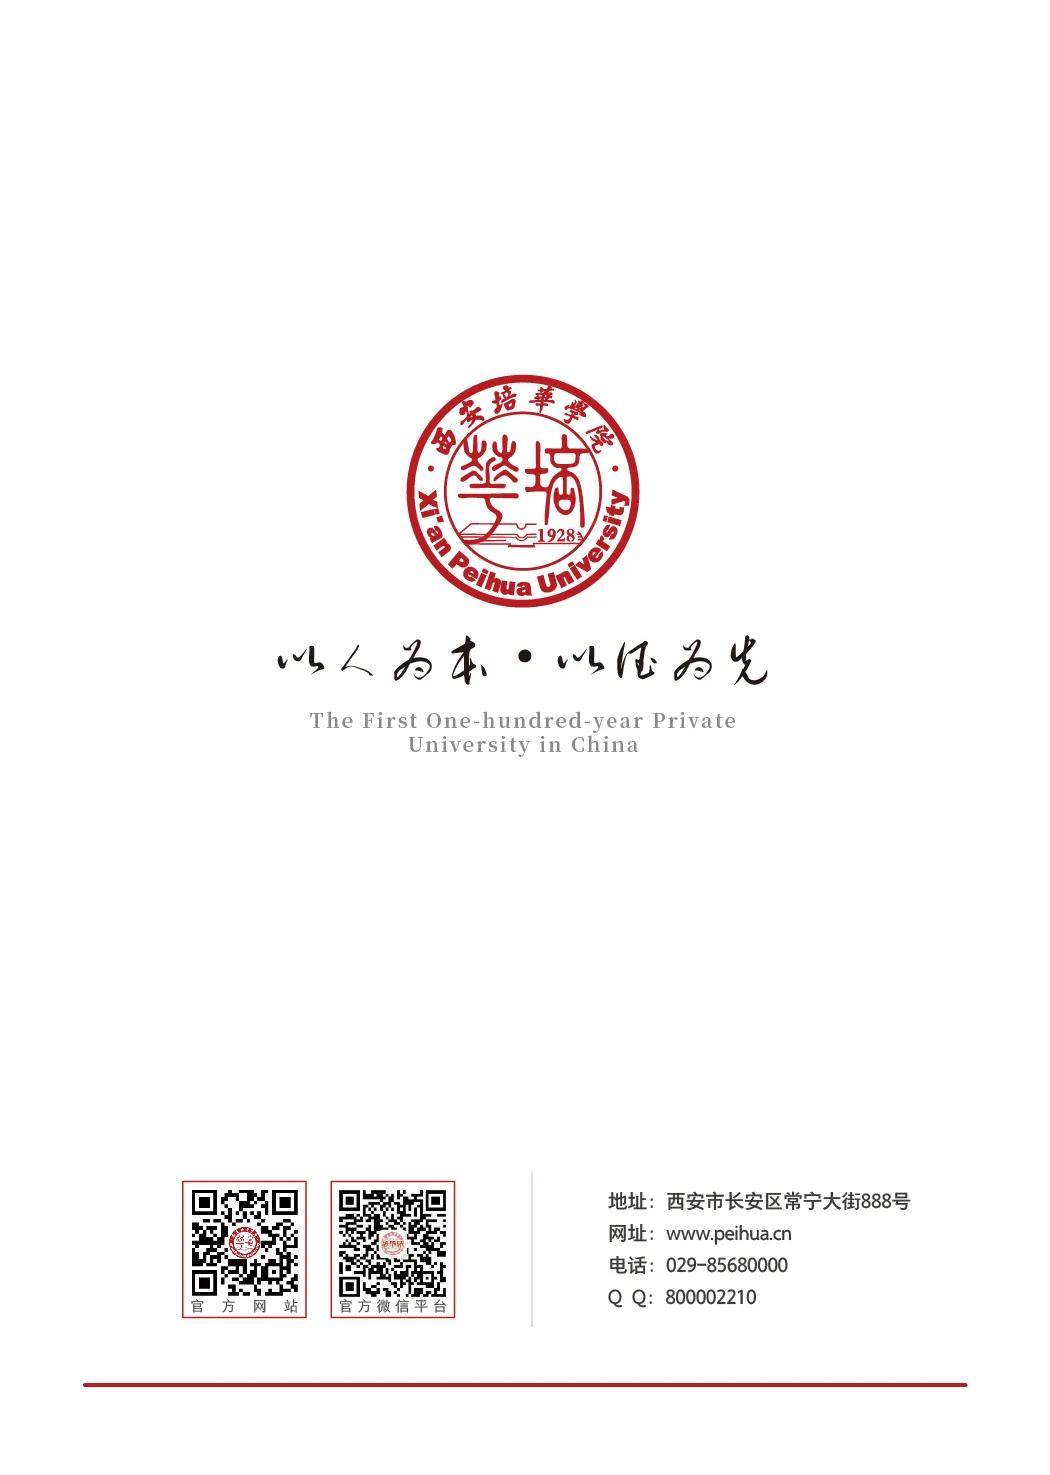 权威发布丨西安培华学院2021年招生简章正式发布!